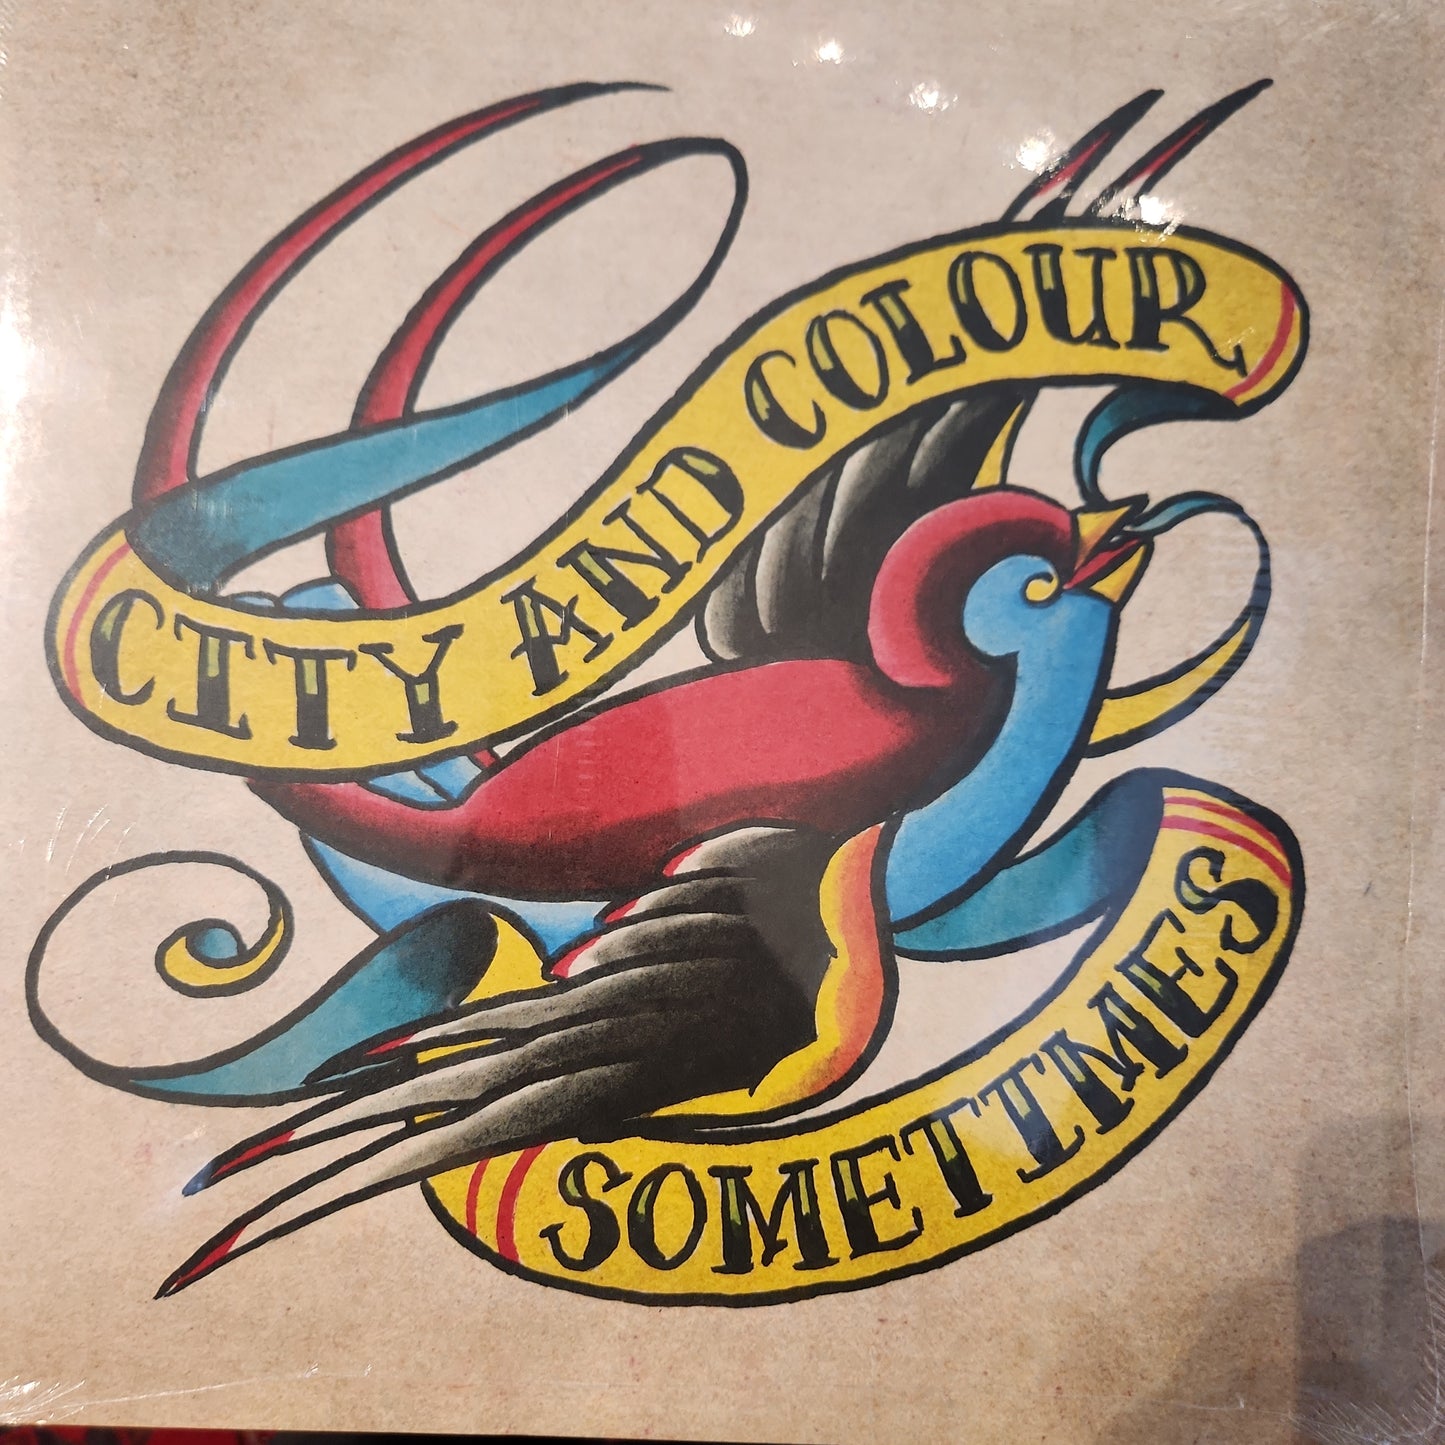 City and Colour - Sometimes - Vinyl LP